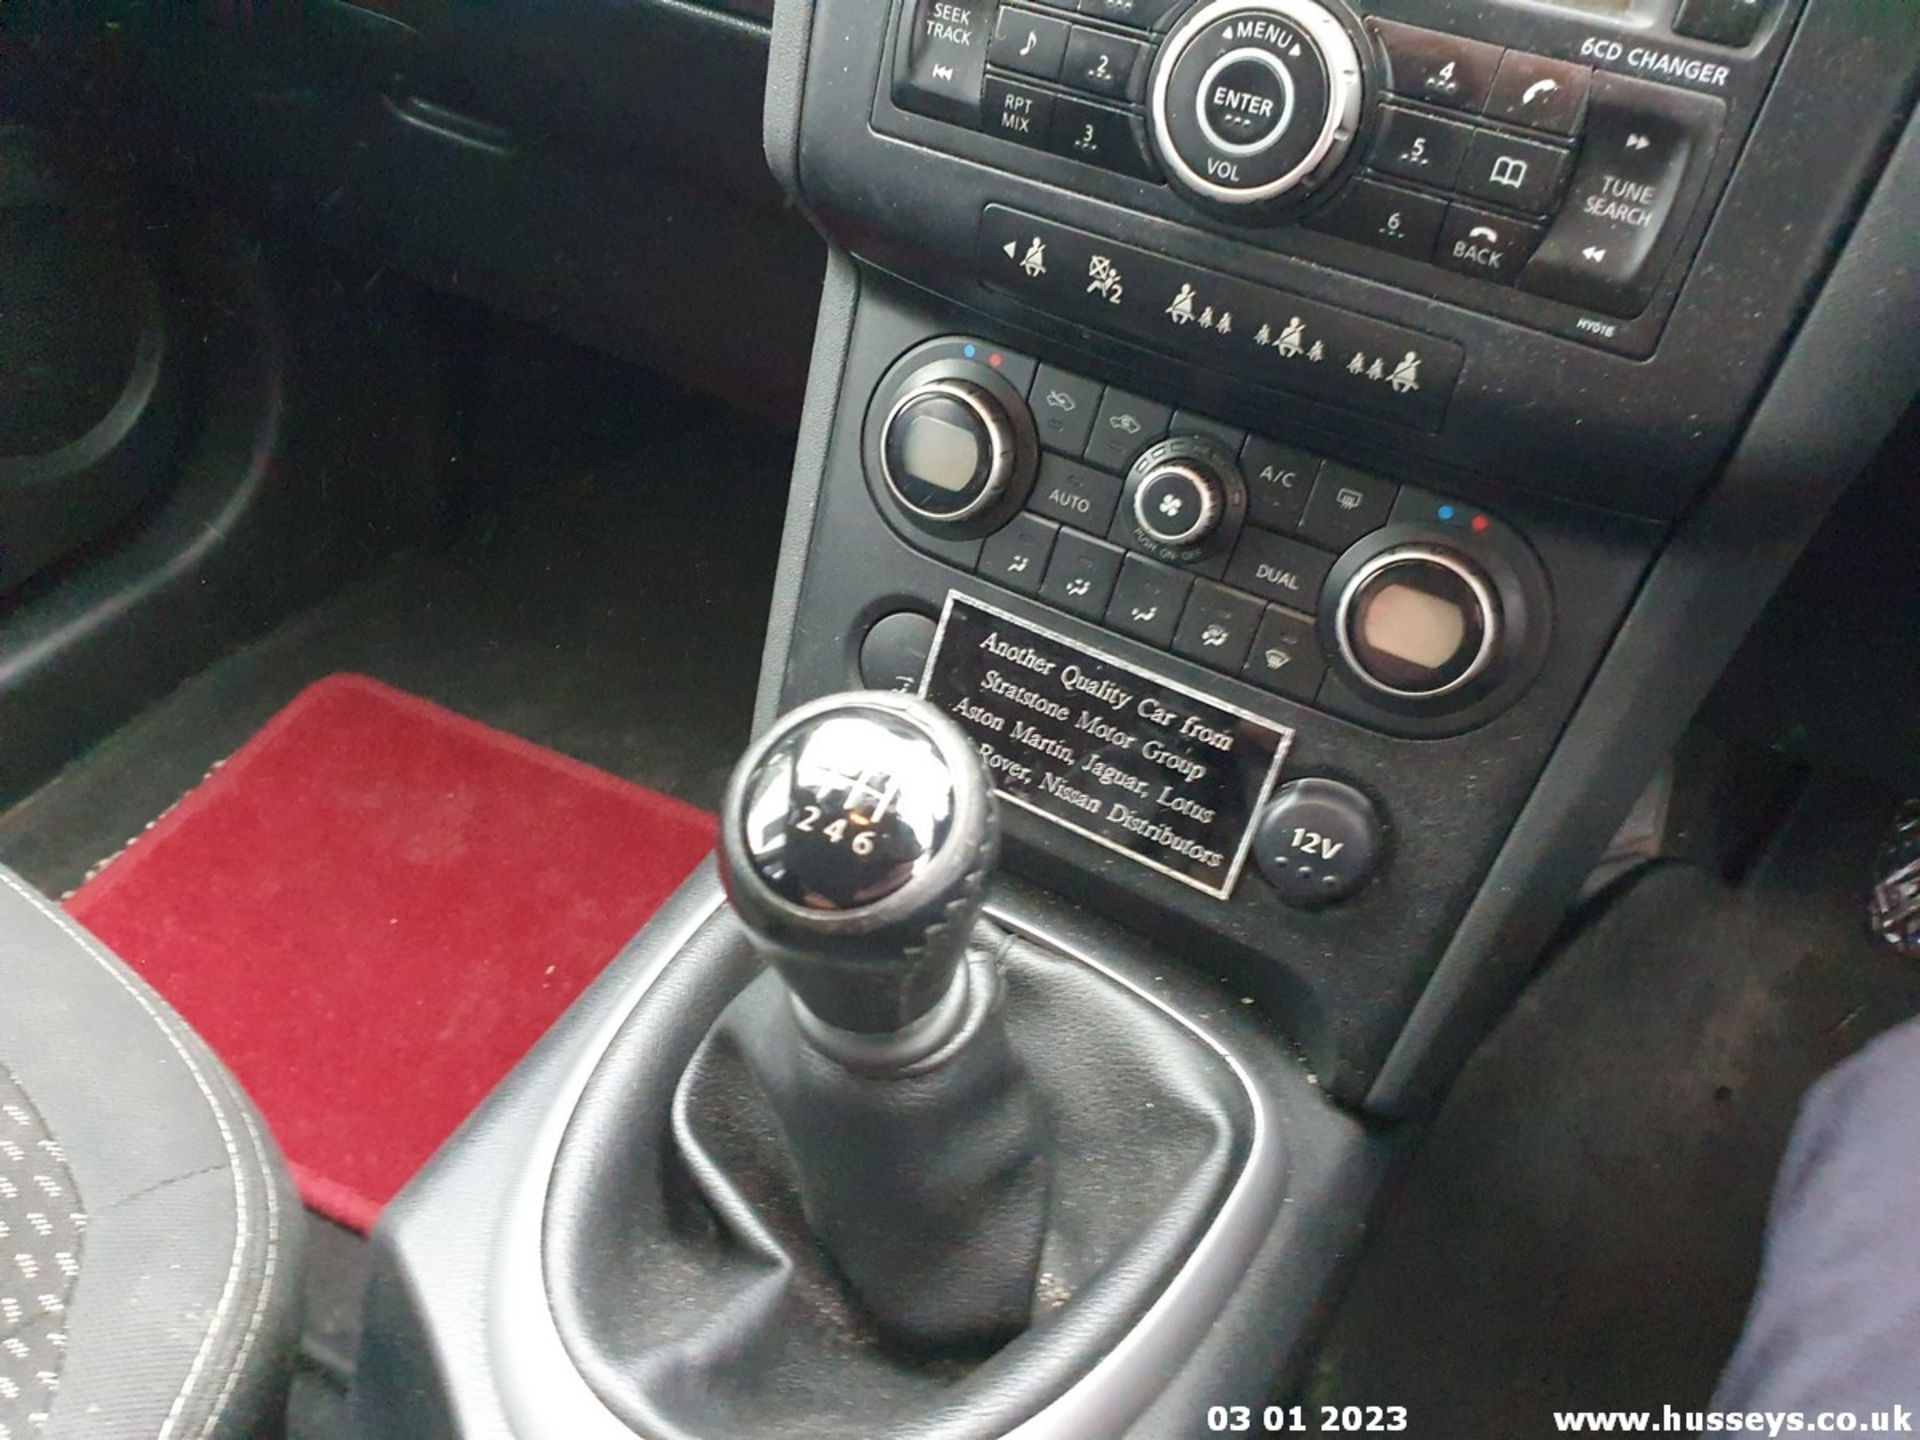 07/57 NISSAN QASHQAI ACENTA DCI 2WD - 1461cc 5dr Hatchback (Black, 150k) - Image 22 of 26